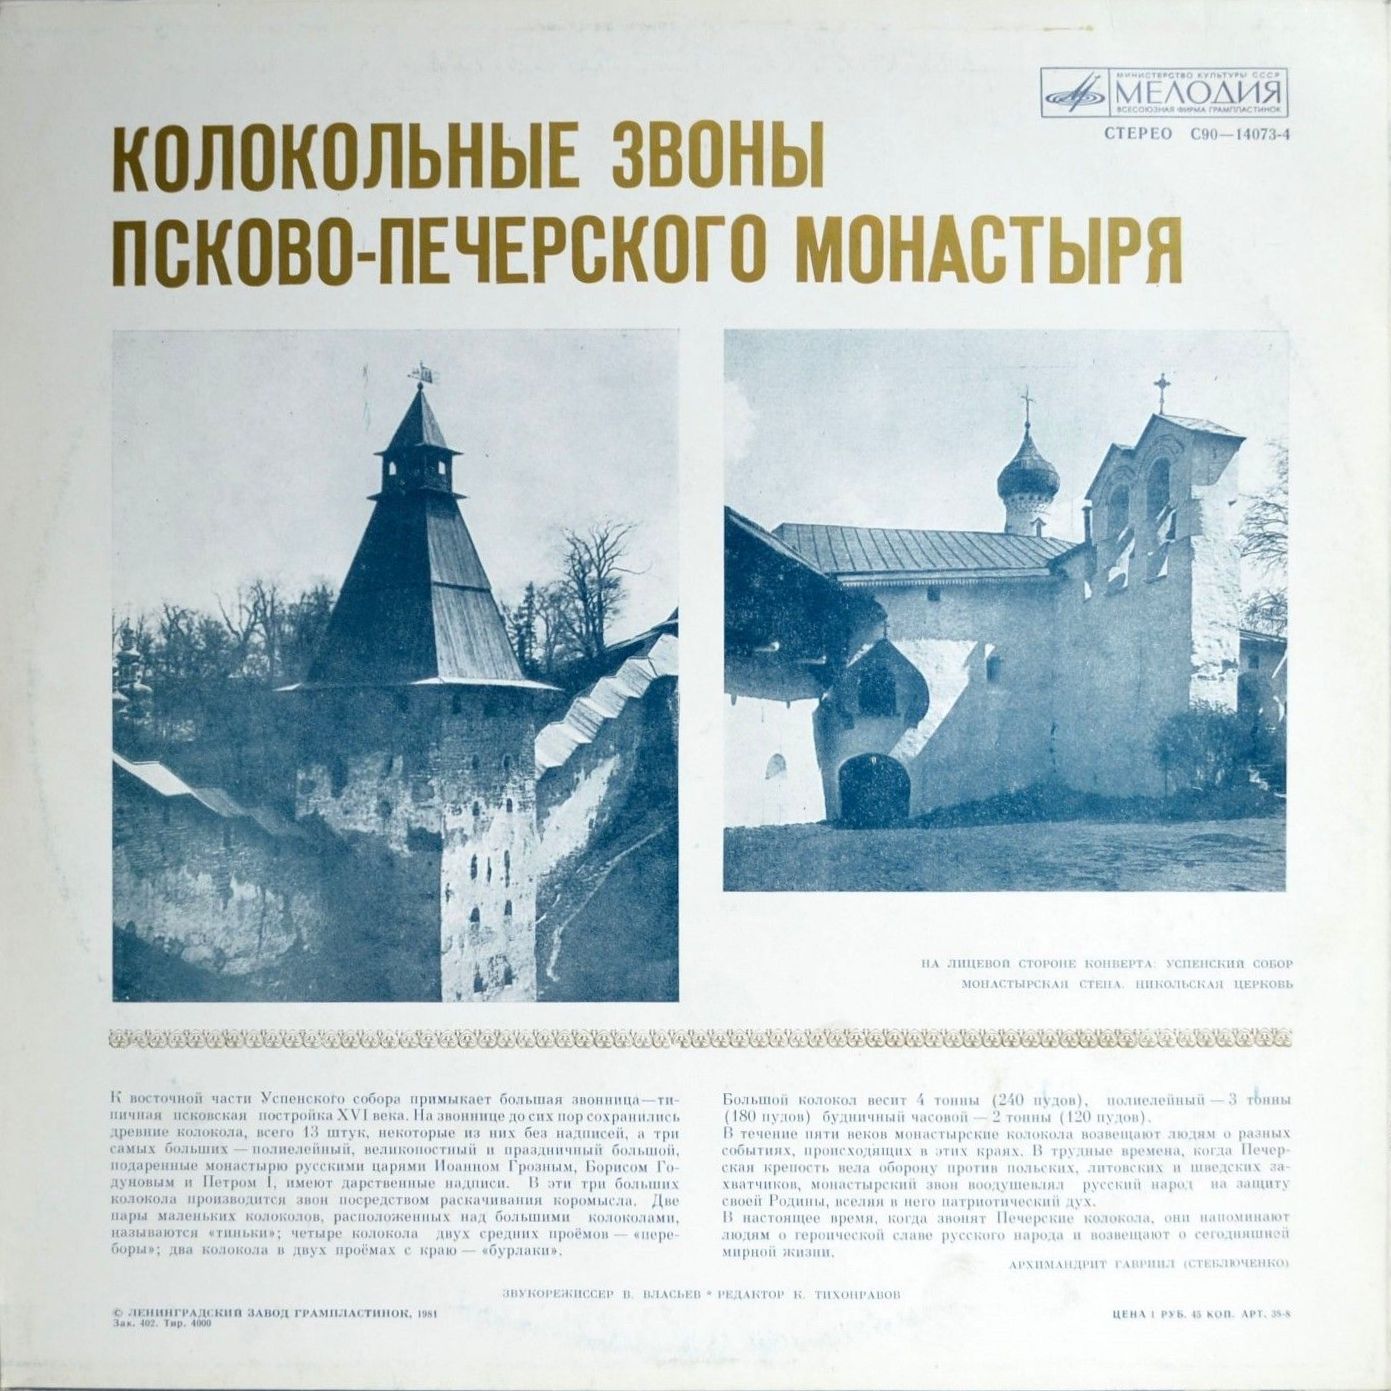 КОЛОКОЛЬНЫЕ ЗВОНЫ Свято-успенского Псково-Печерского монастыря